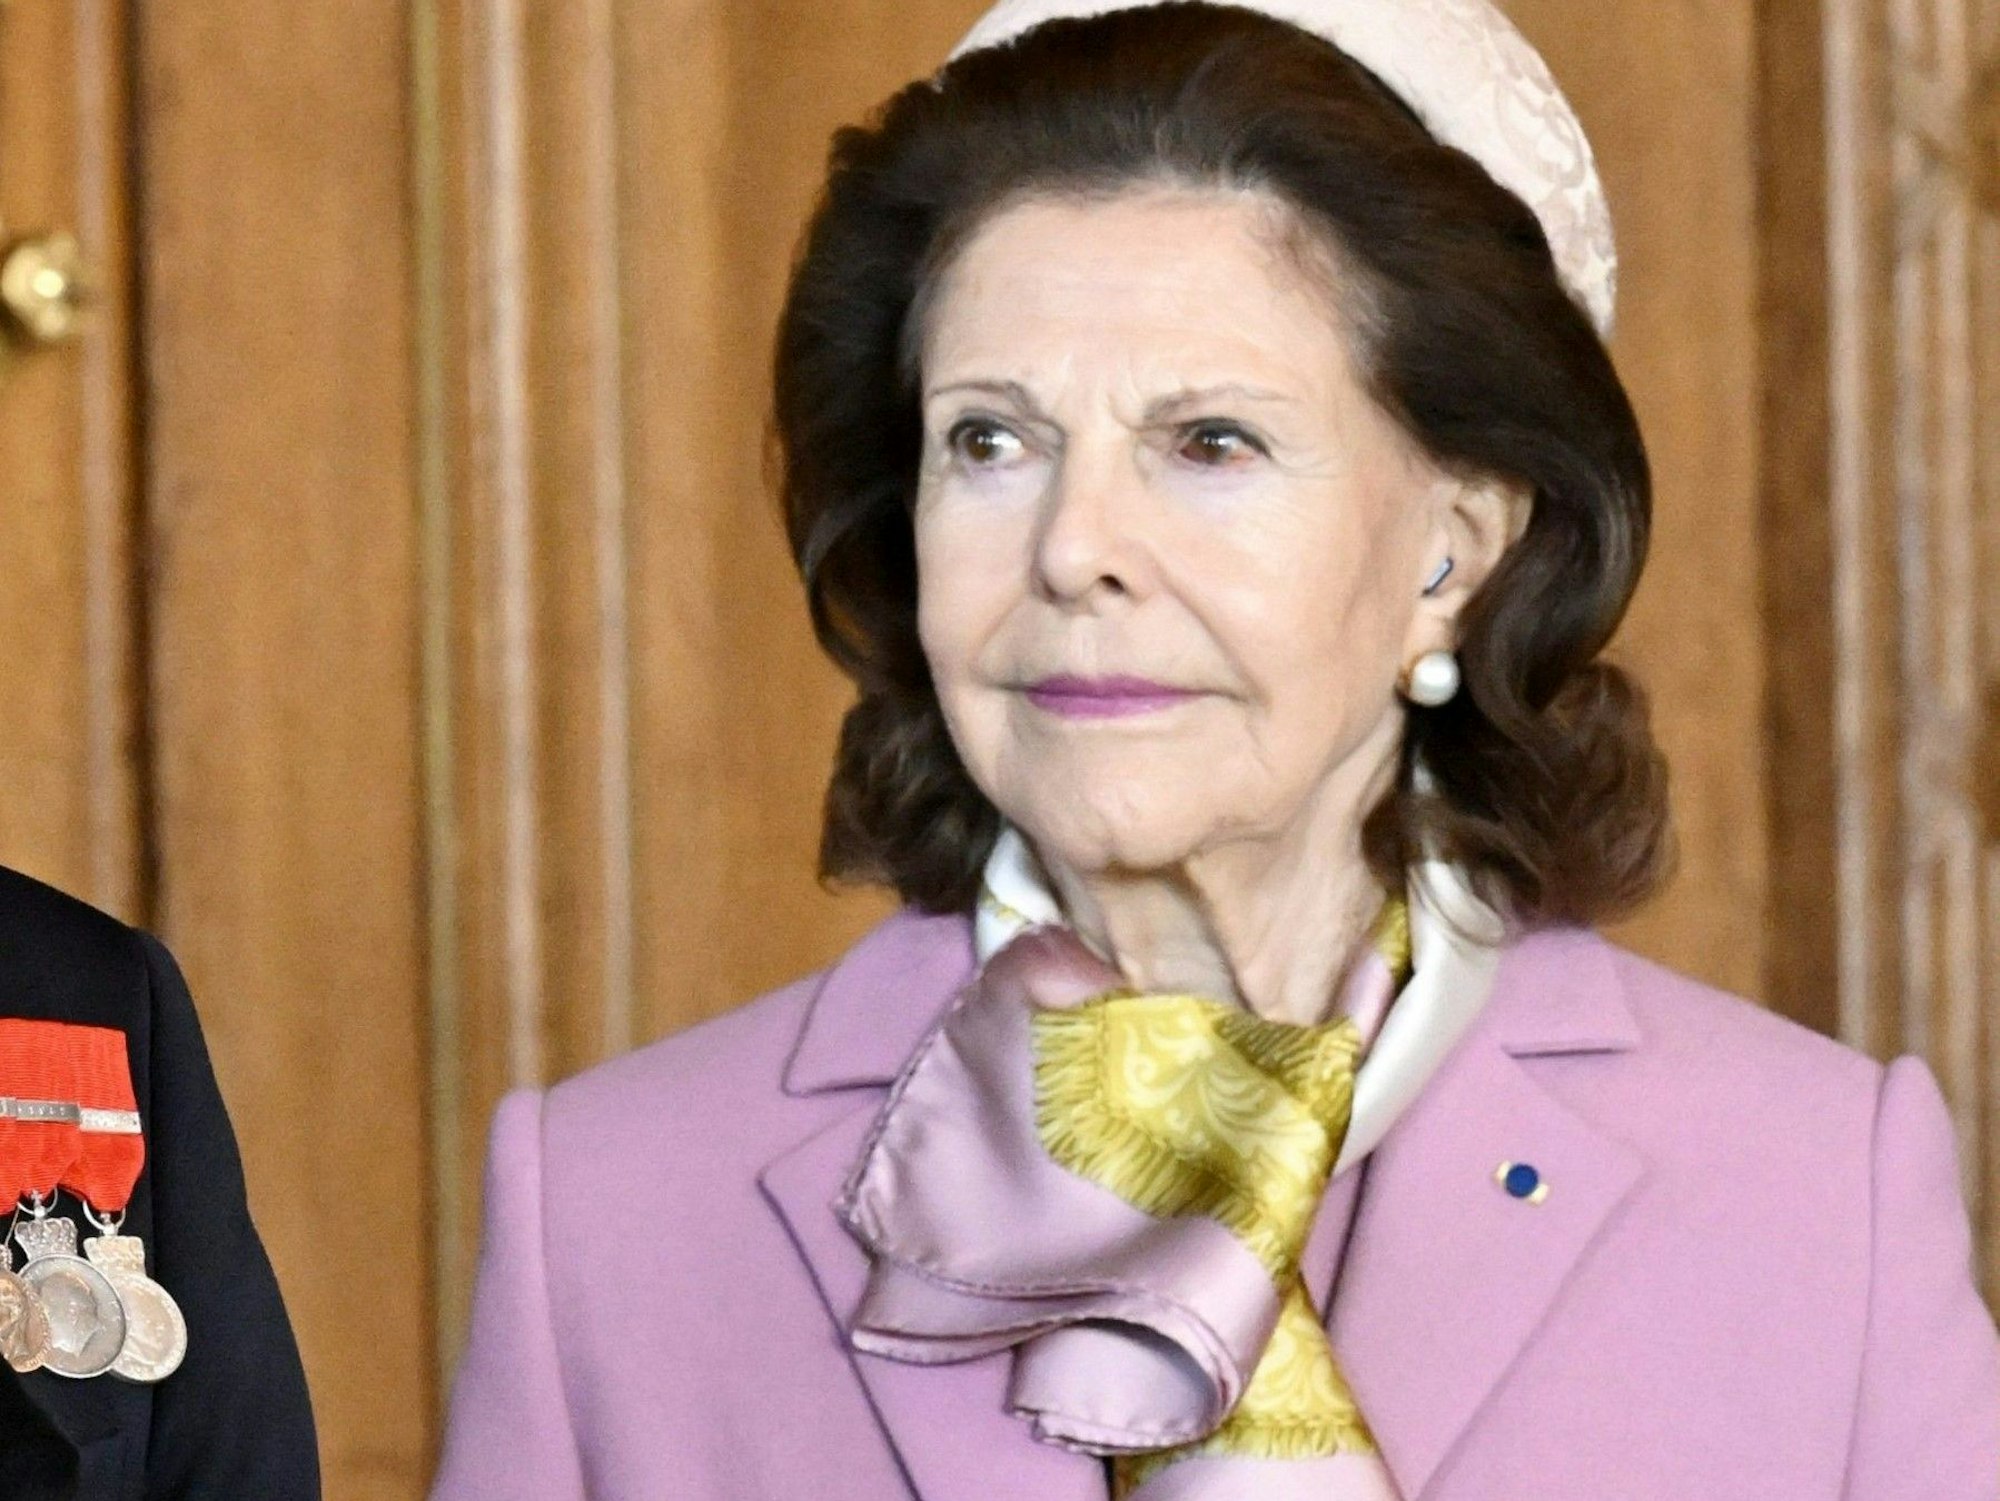 Königin Silvia am 23. April bei einer Presseerklärung an der Seite von König Carl XVI. Gustaf im Königlichen Palast. Ihr rotes Auge sorgte auch in schwedischen Medien für Aufsehen.